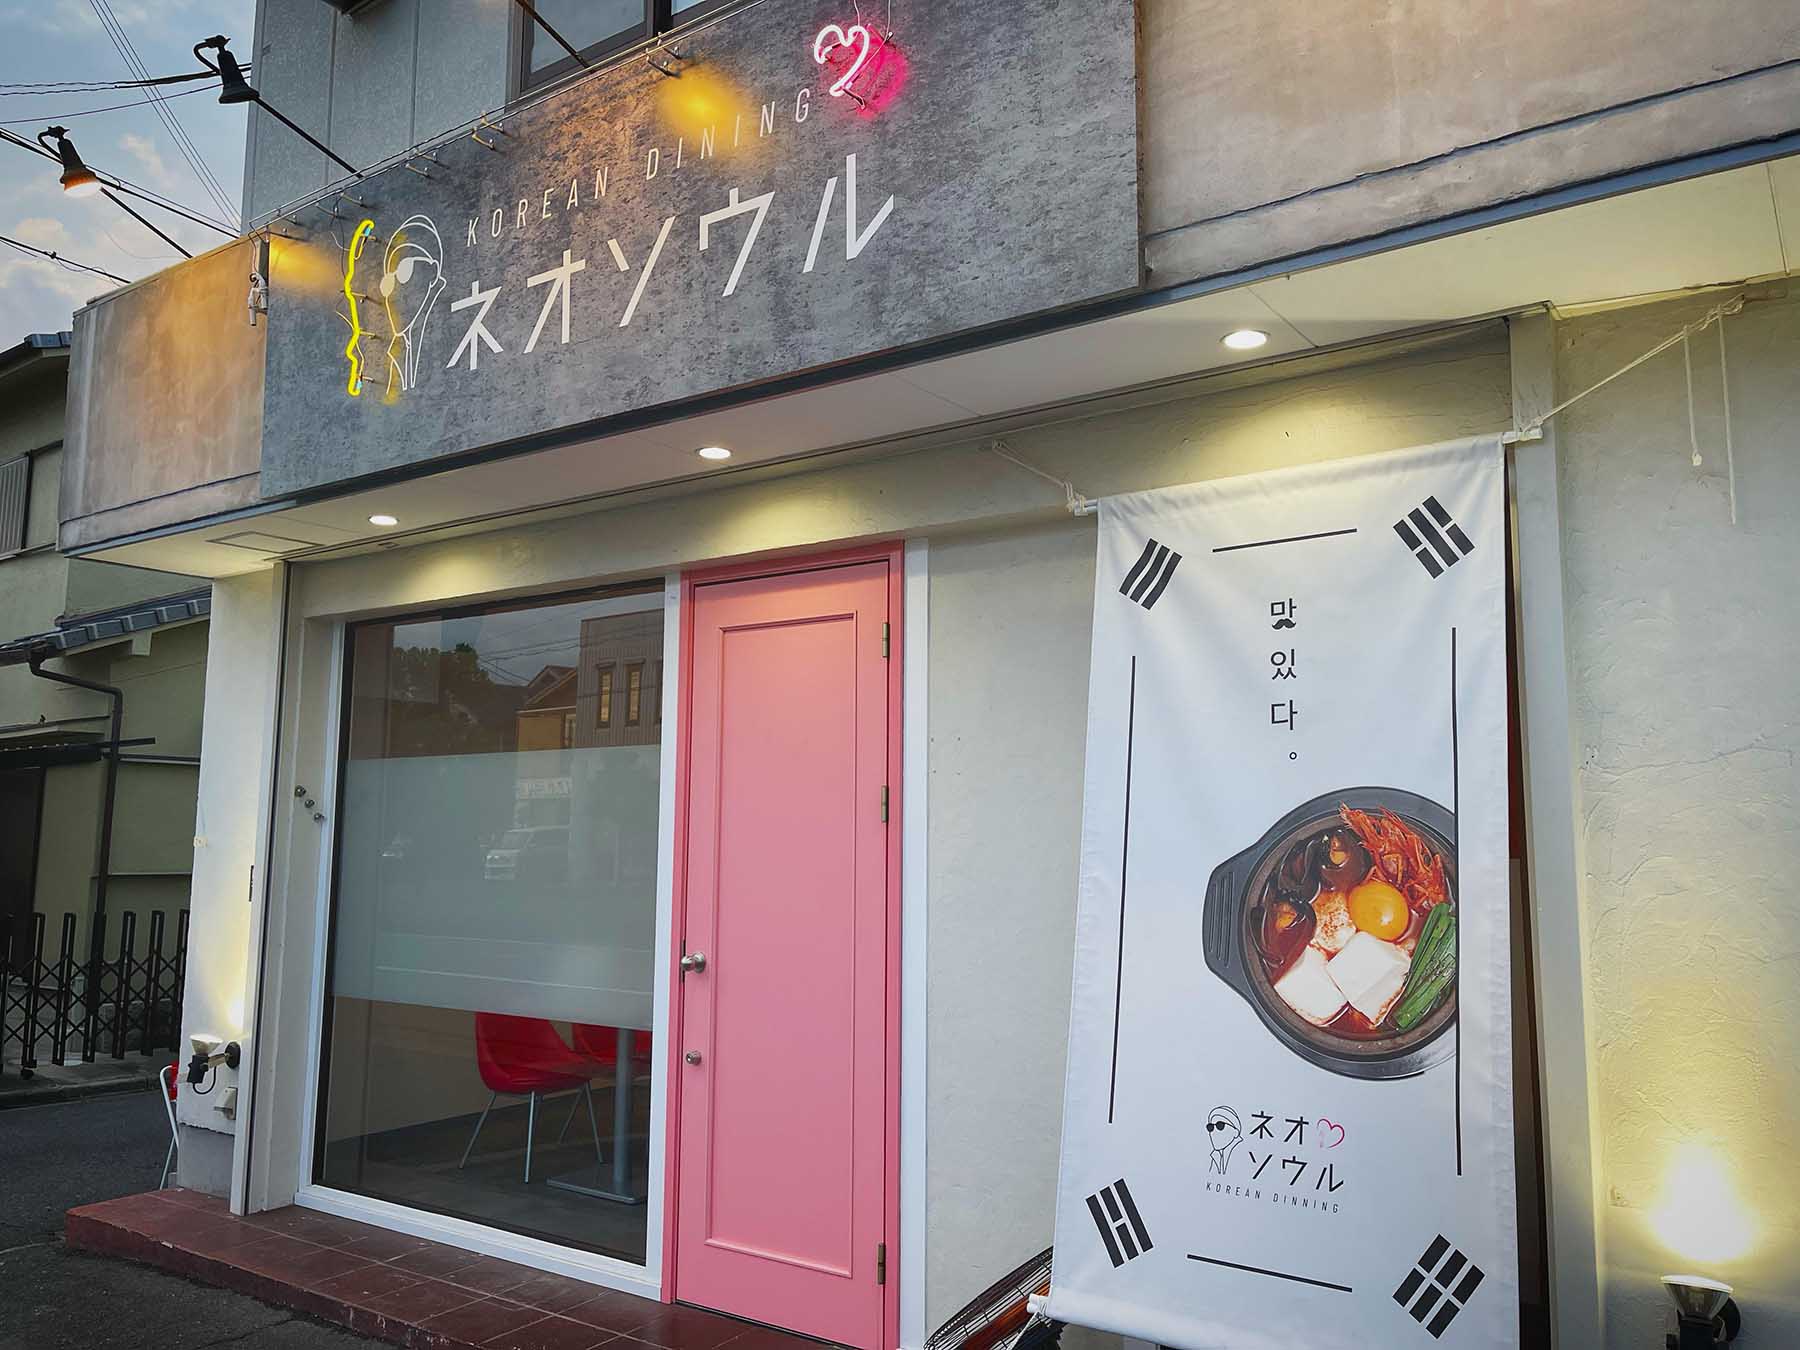 【橿原市 新店情報】創作韓国料理店「KOREAN DINING ネオソウル」が橿原市土橋町にオープン！